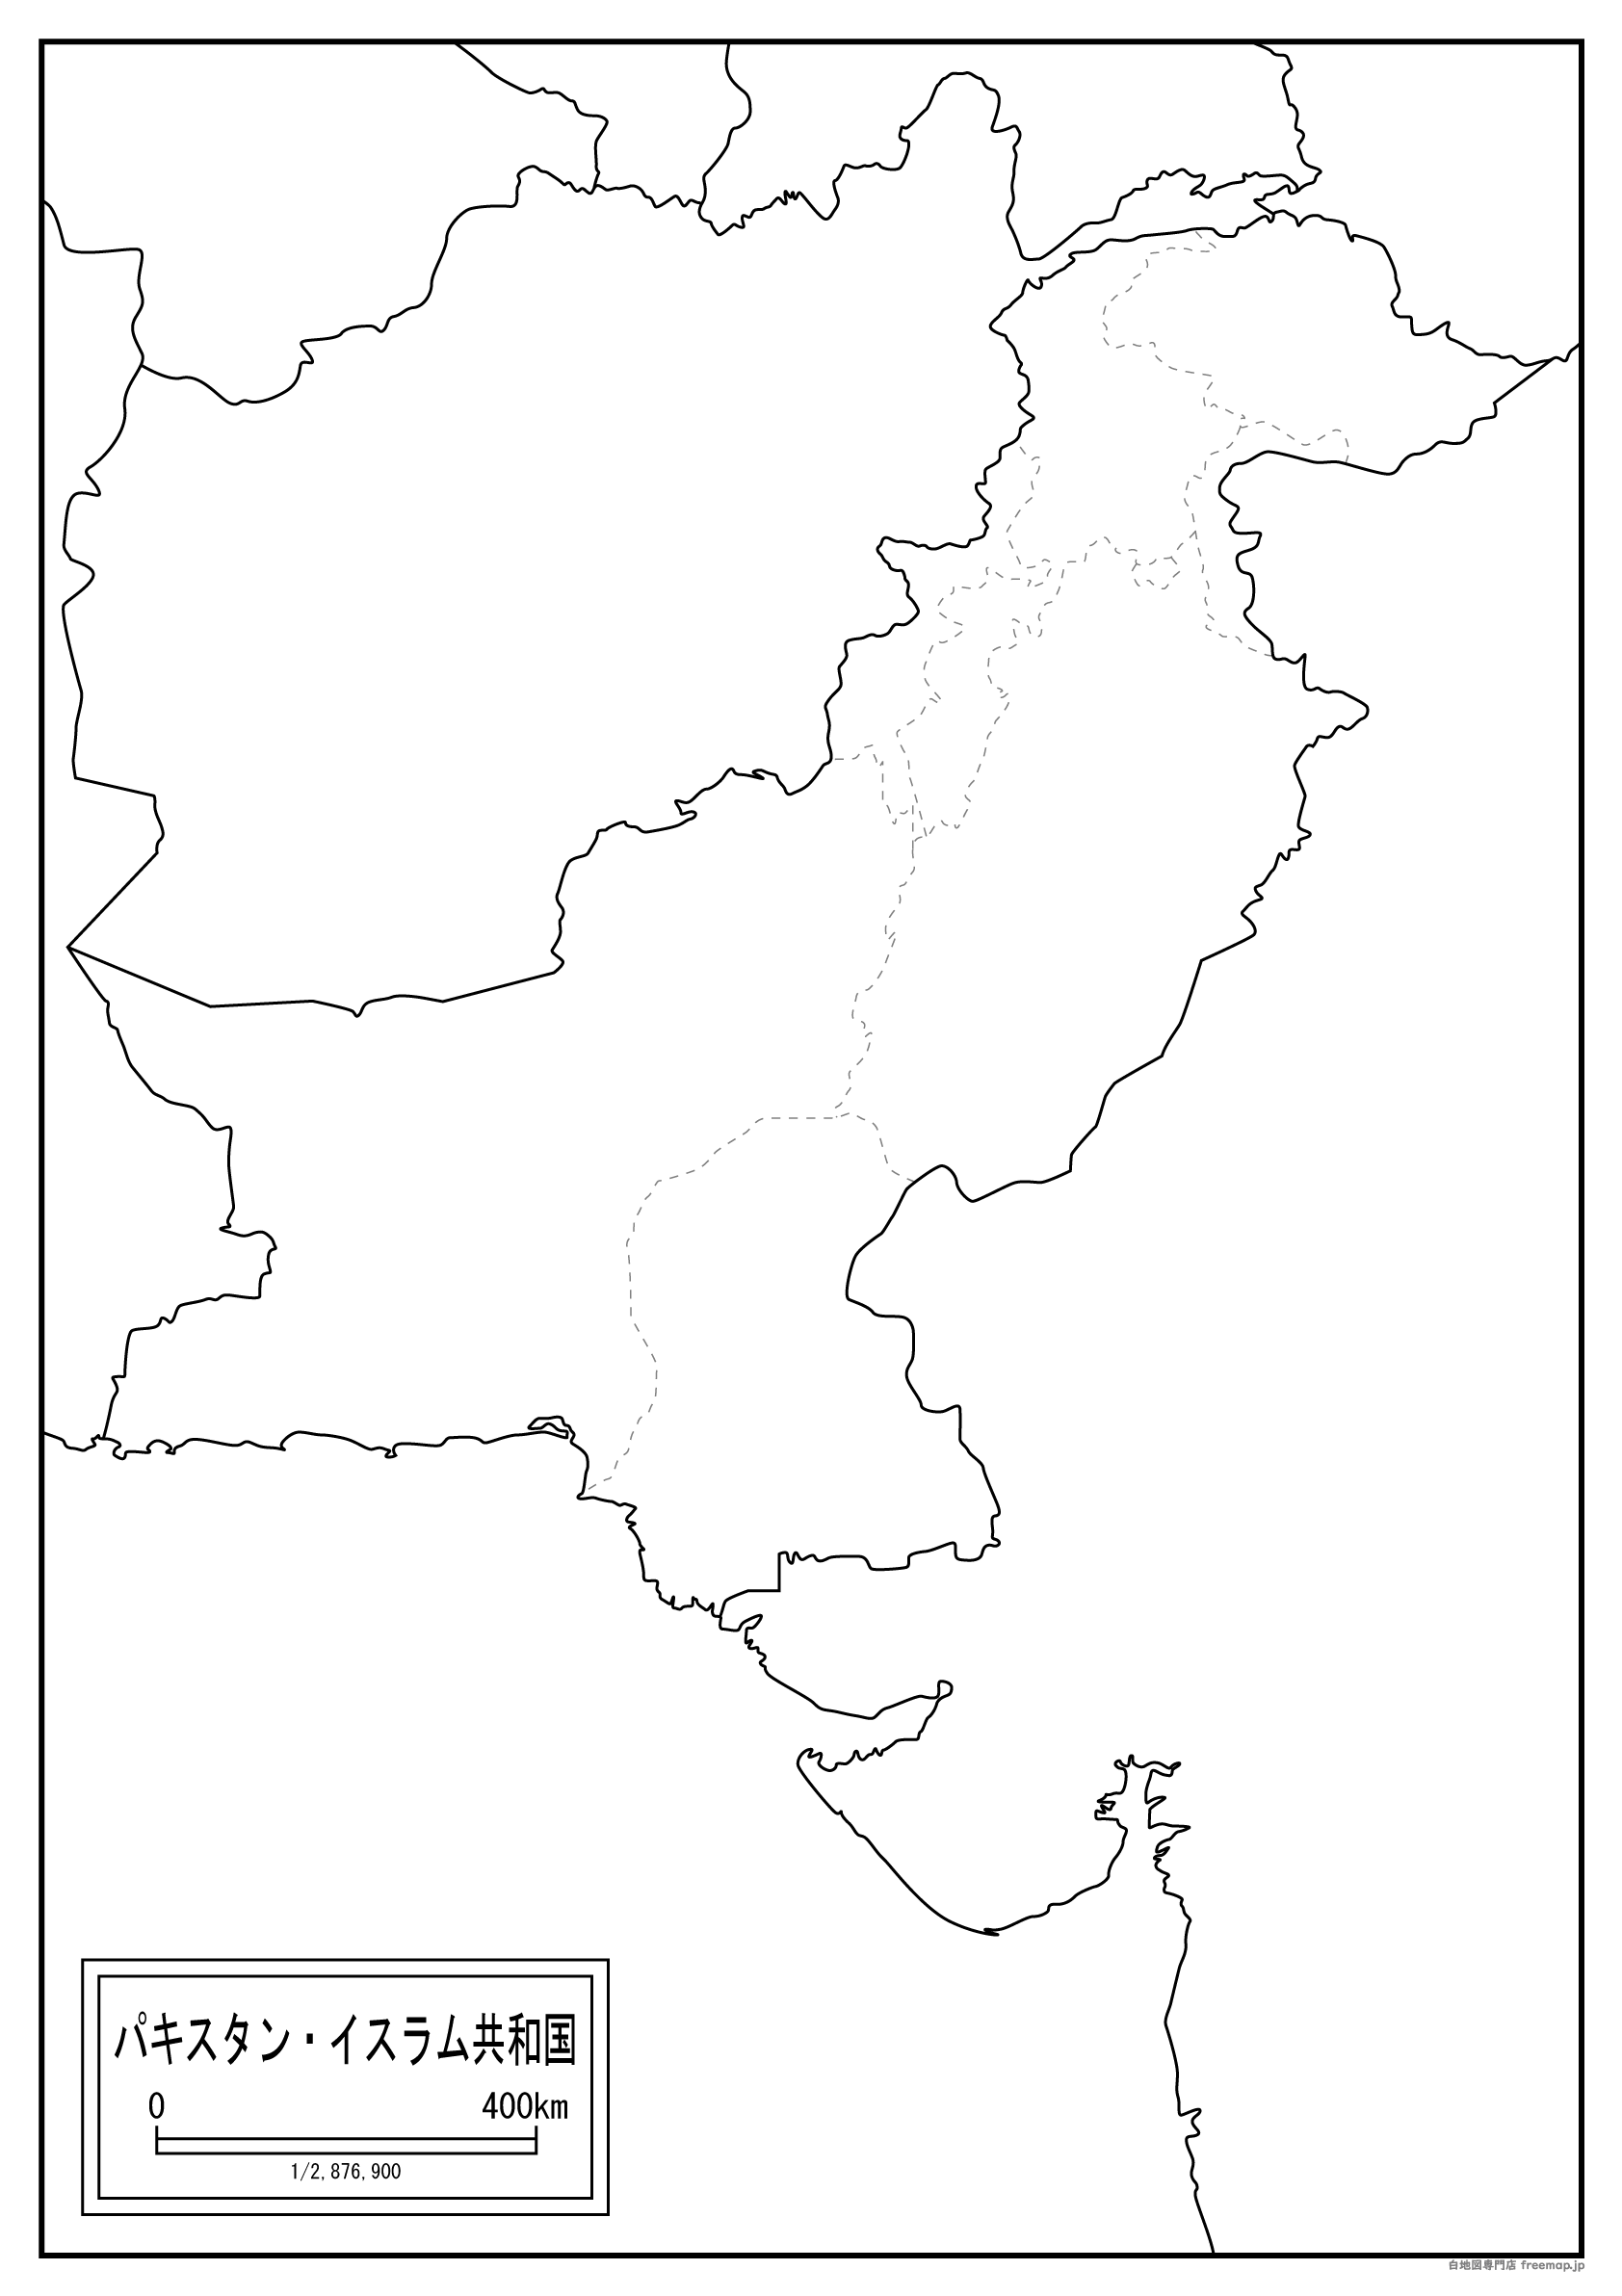 パキスタンのサムネイル